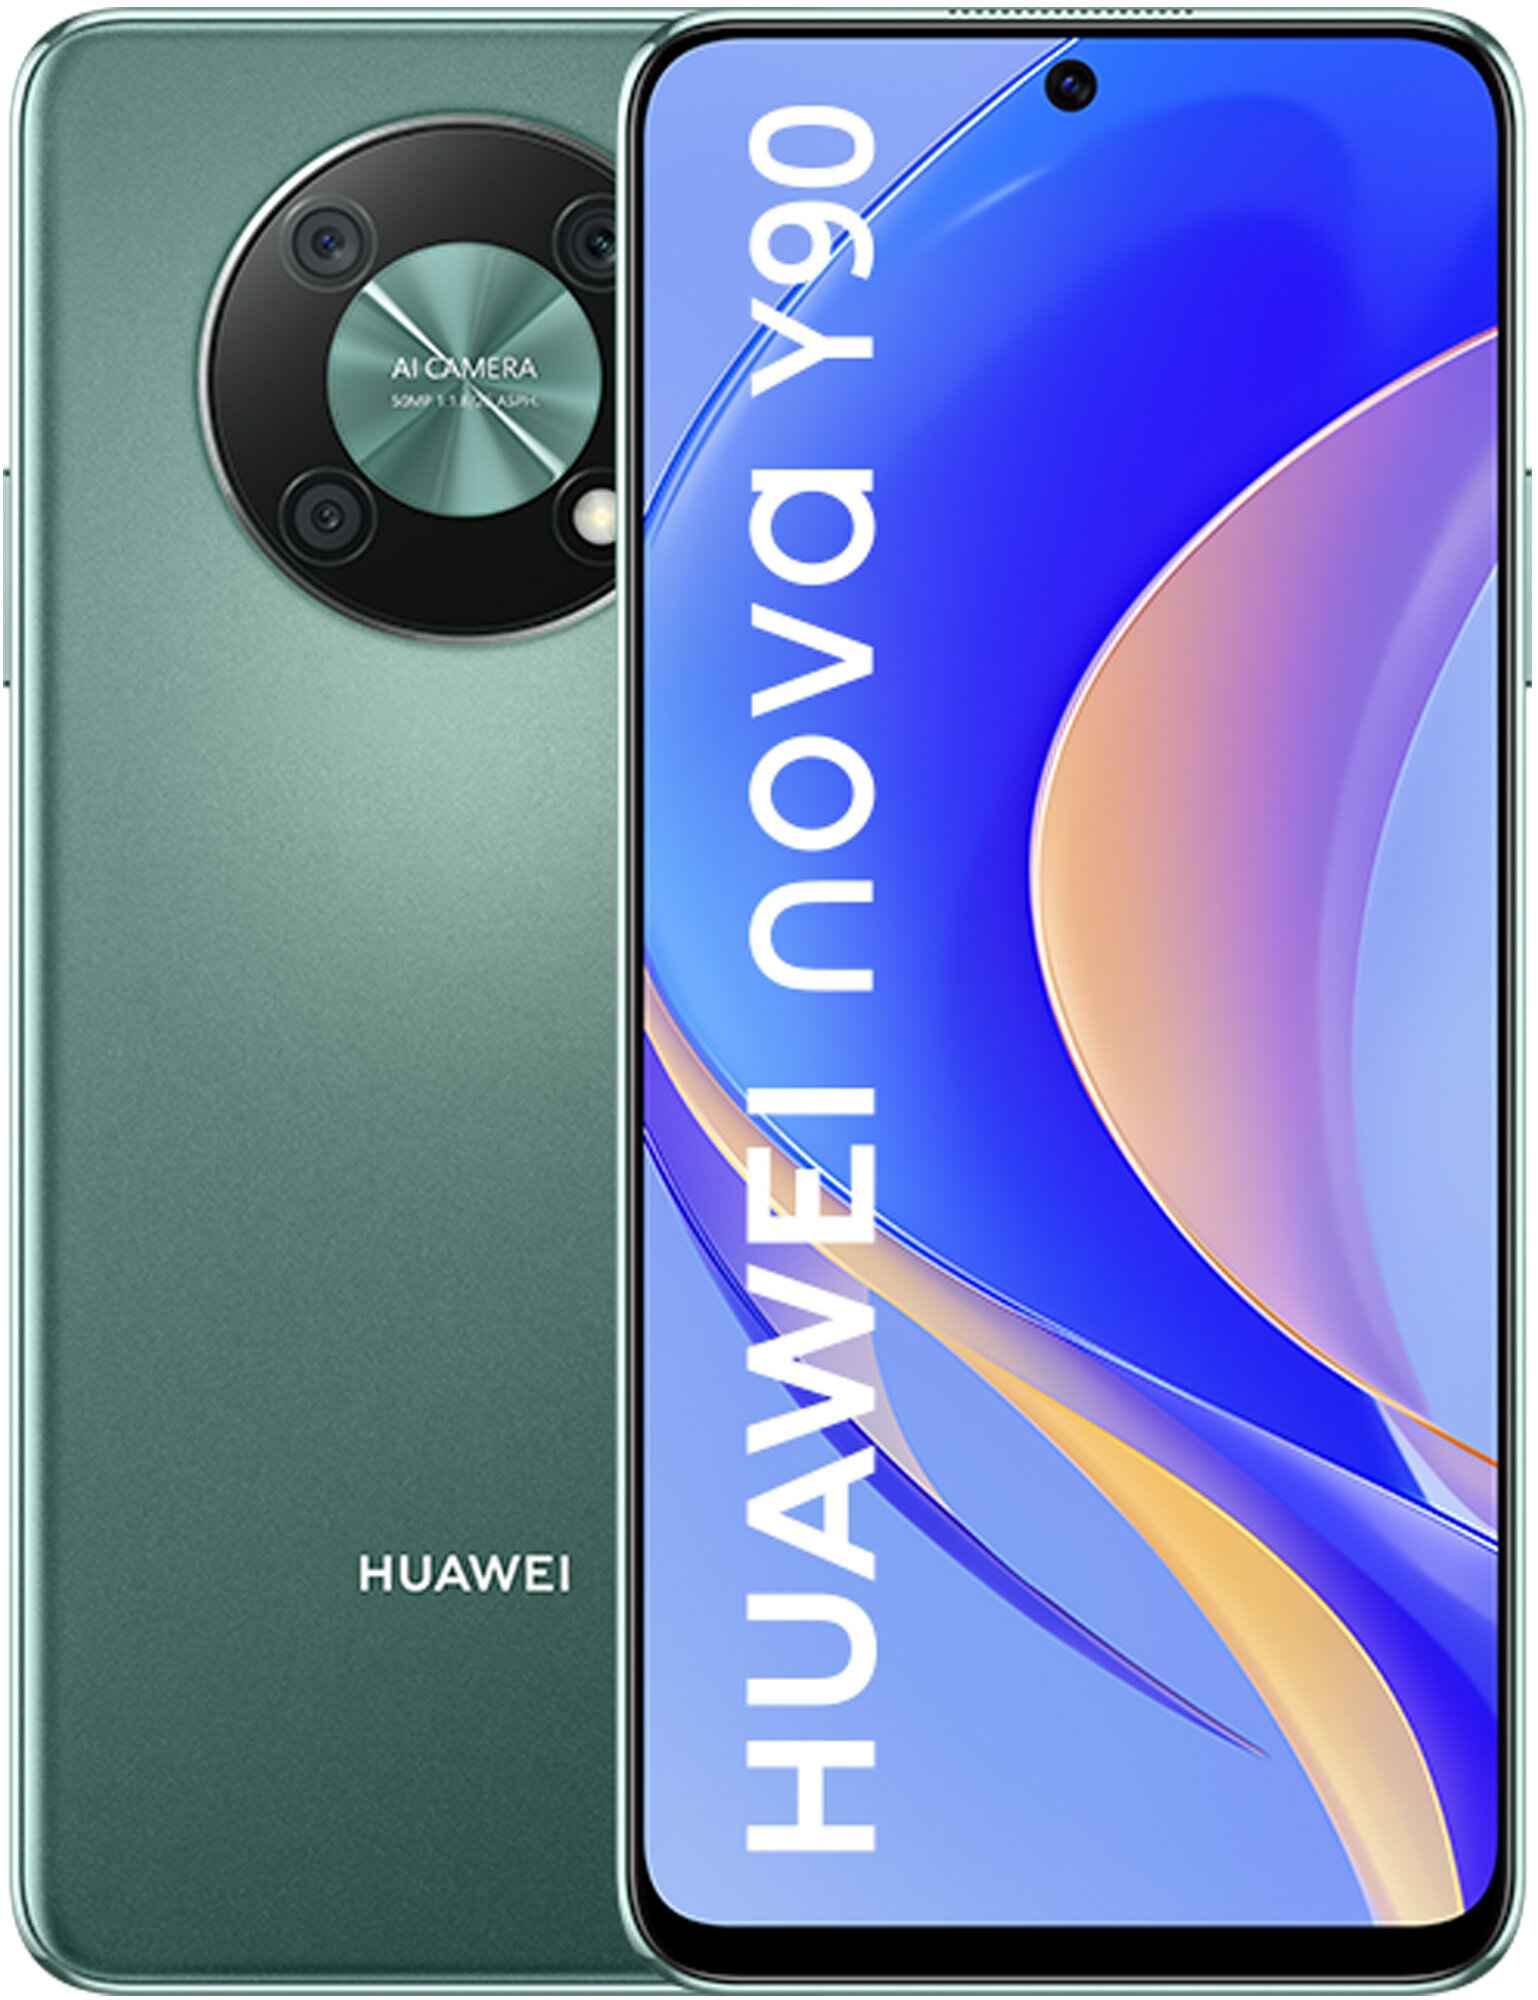 HUAWEI Nova Y90 4/128 GB Emerald Green